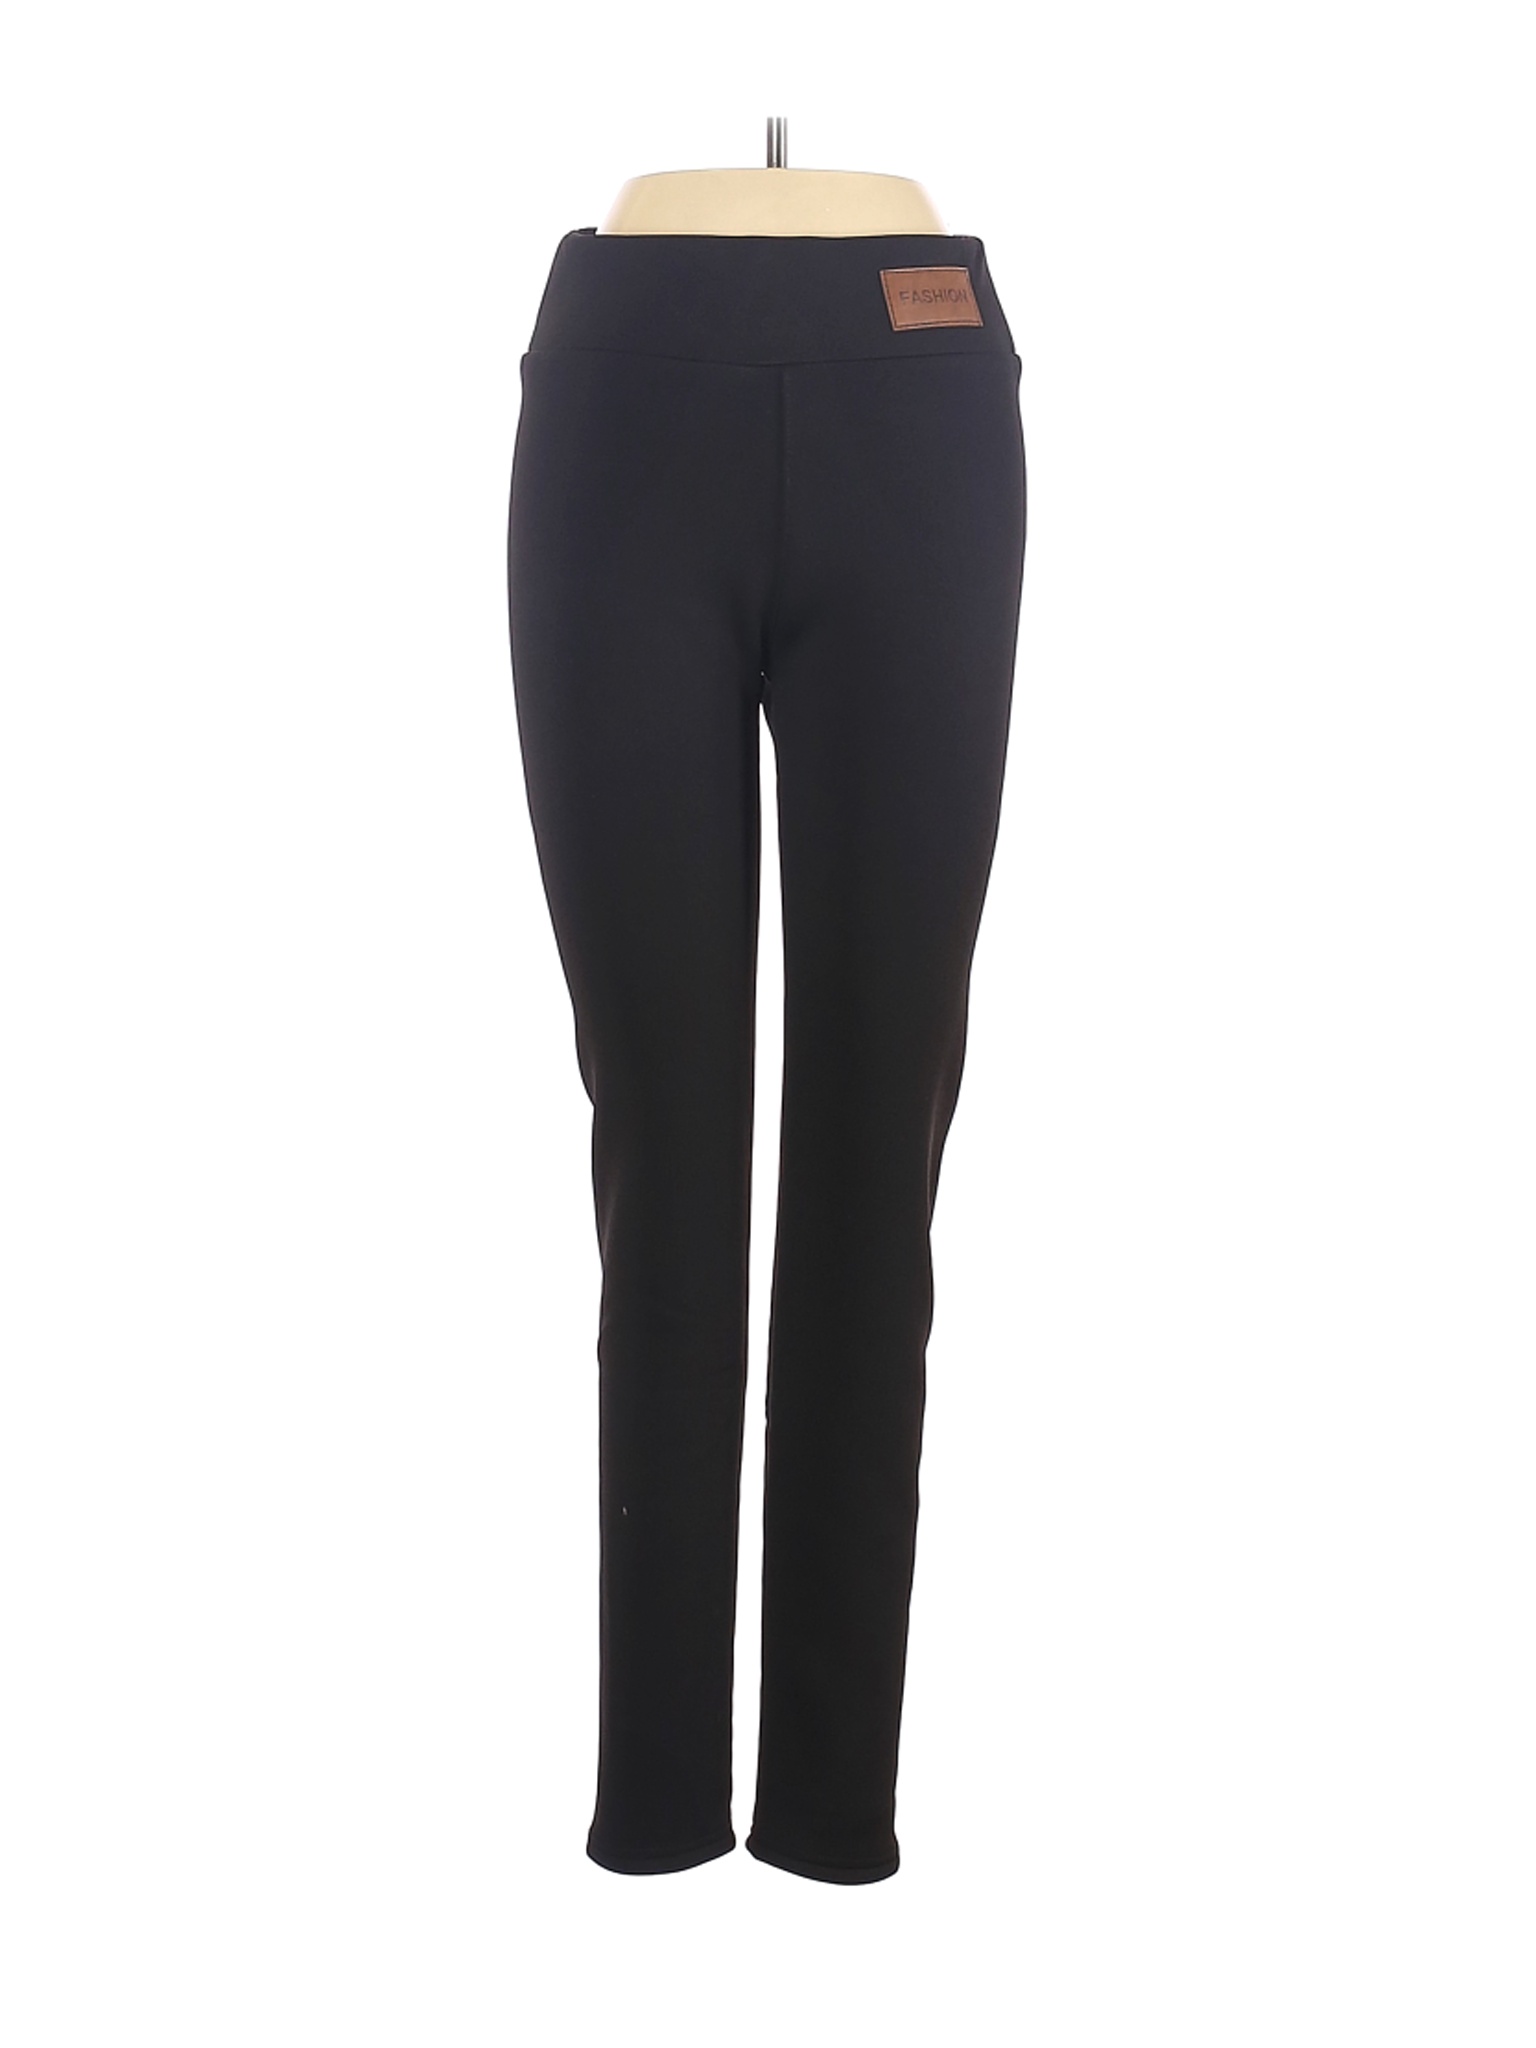 Fashion Women Black Casual Pants S | eBay